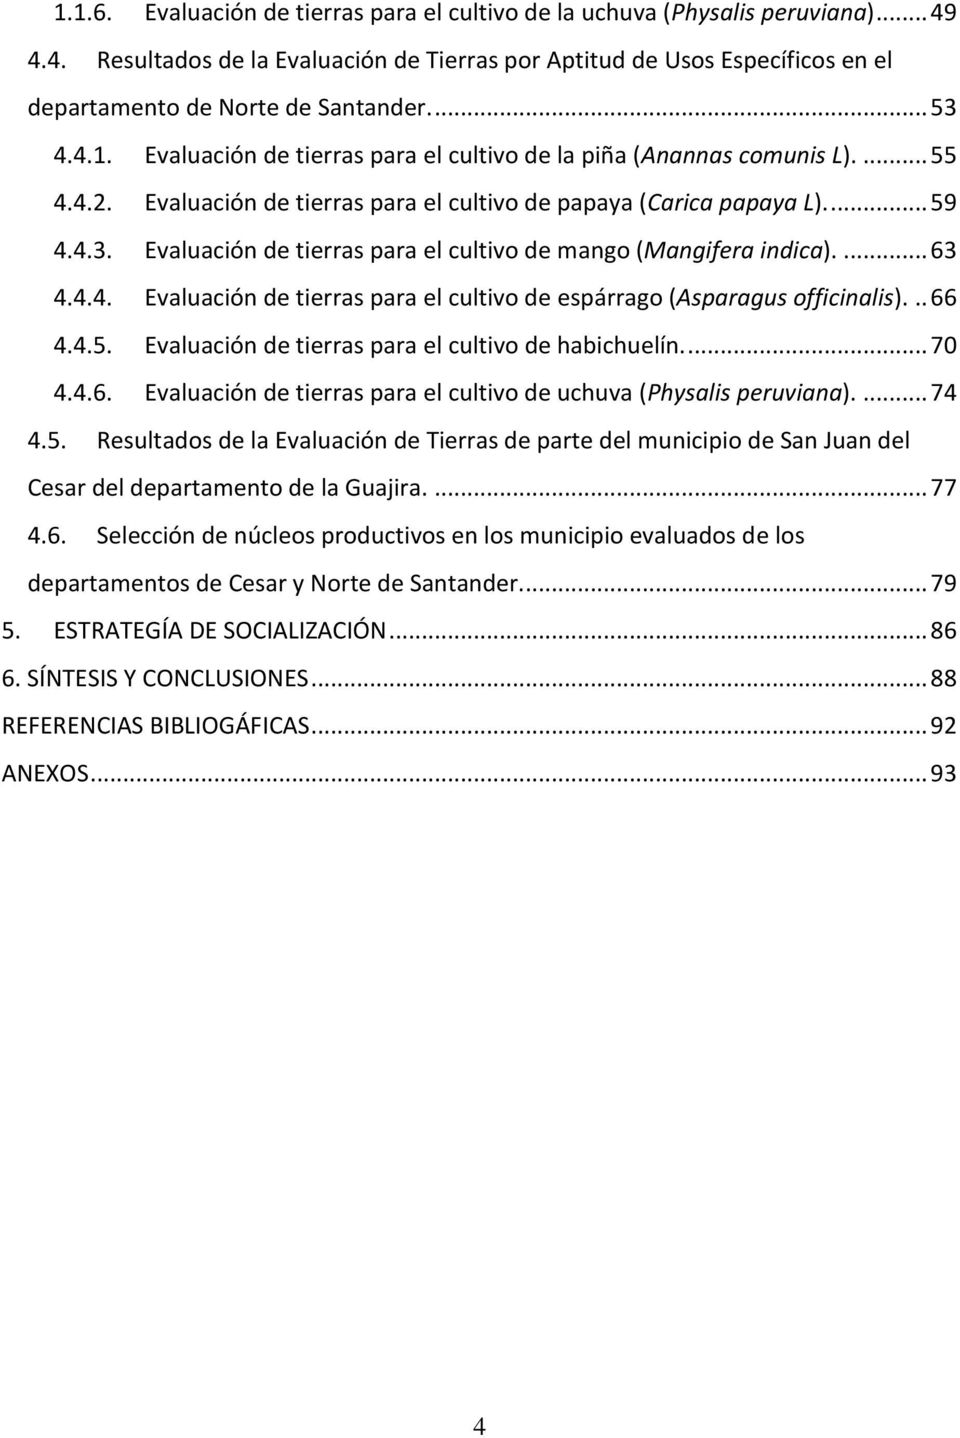 ... 63 4.4.4. Evaluación de tierras para el cultivo de espárrago (Asparagus officinalis)... 66 4.4.5. Evaluación de tierras para el cultivo de habichuelín.... 70 4.4.6. Evaluación de tierras para el cultivo de uchuva (Physalis peruviana).